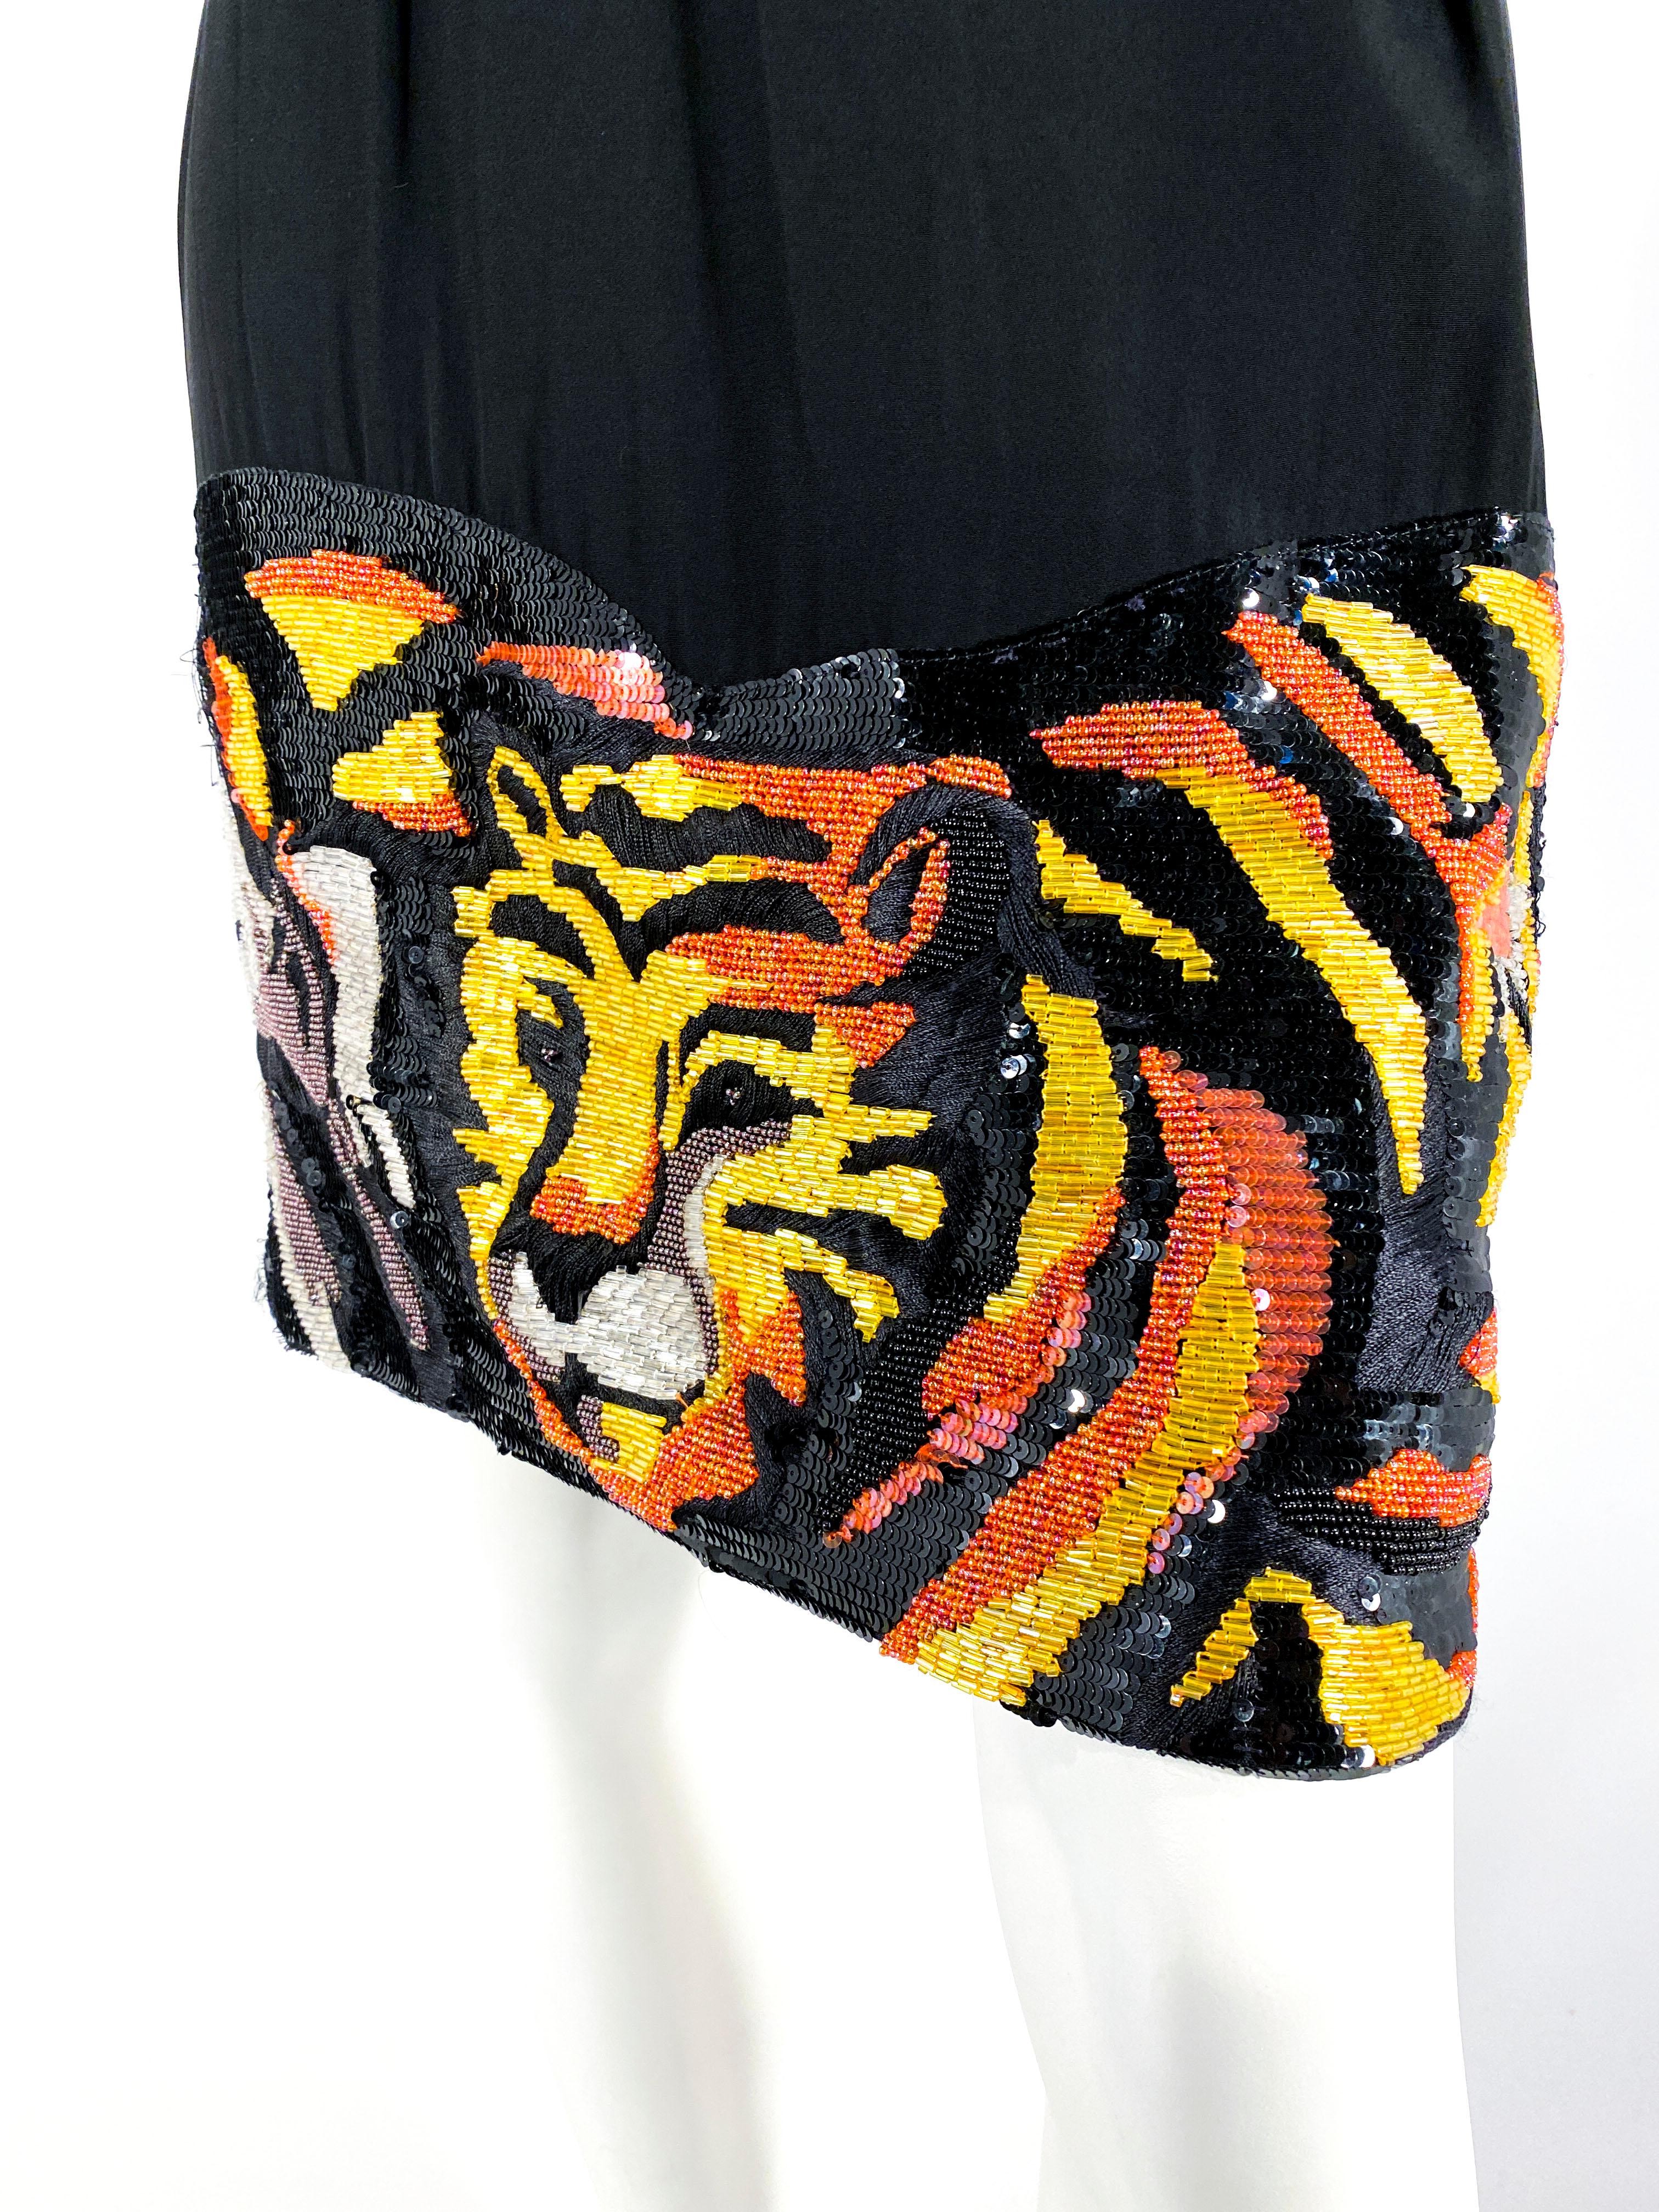 Le skreit pictural en soie noire des années 1990, fortement perlé, représente environ un tiers de l'ensemble de la jupe. Les perles représentent quelques tigres et un zèbre. L'ourlet se situe au-dessus du genou et le dos est doté d'une fermeture à